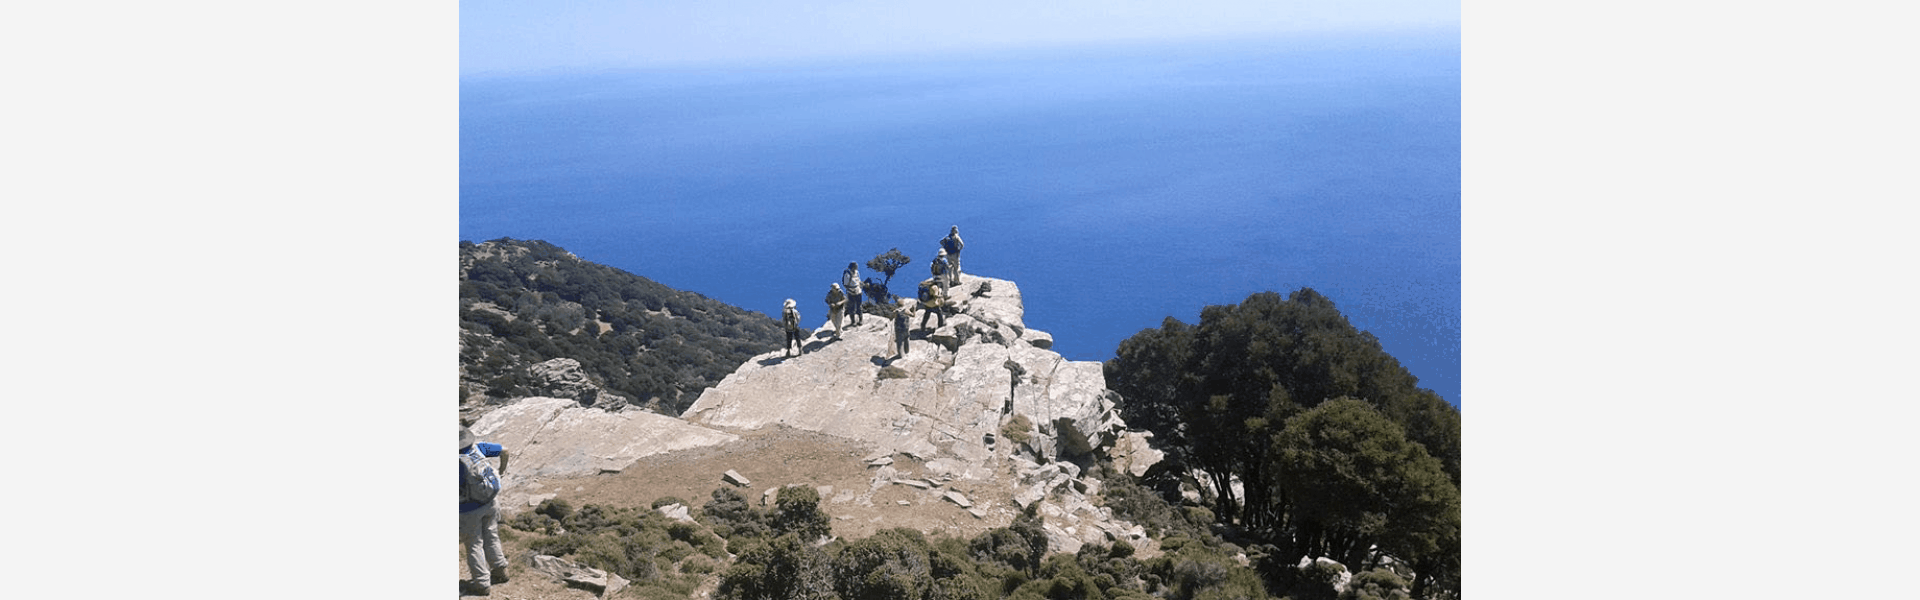 Ορειβατικός Σύλλογος Λουτρακίου - Θεματικός Τουρισμός